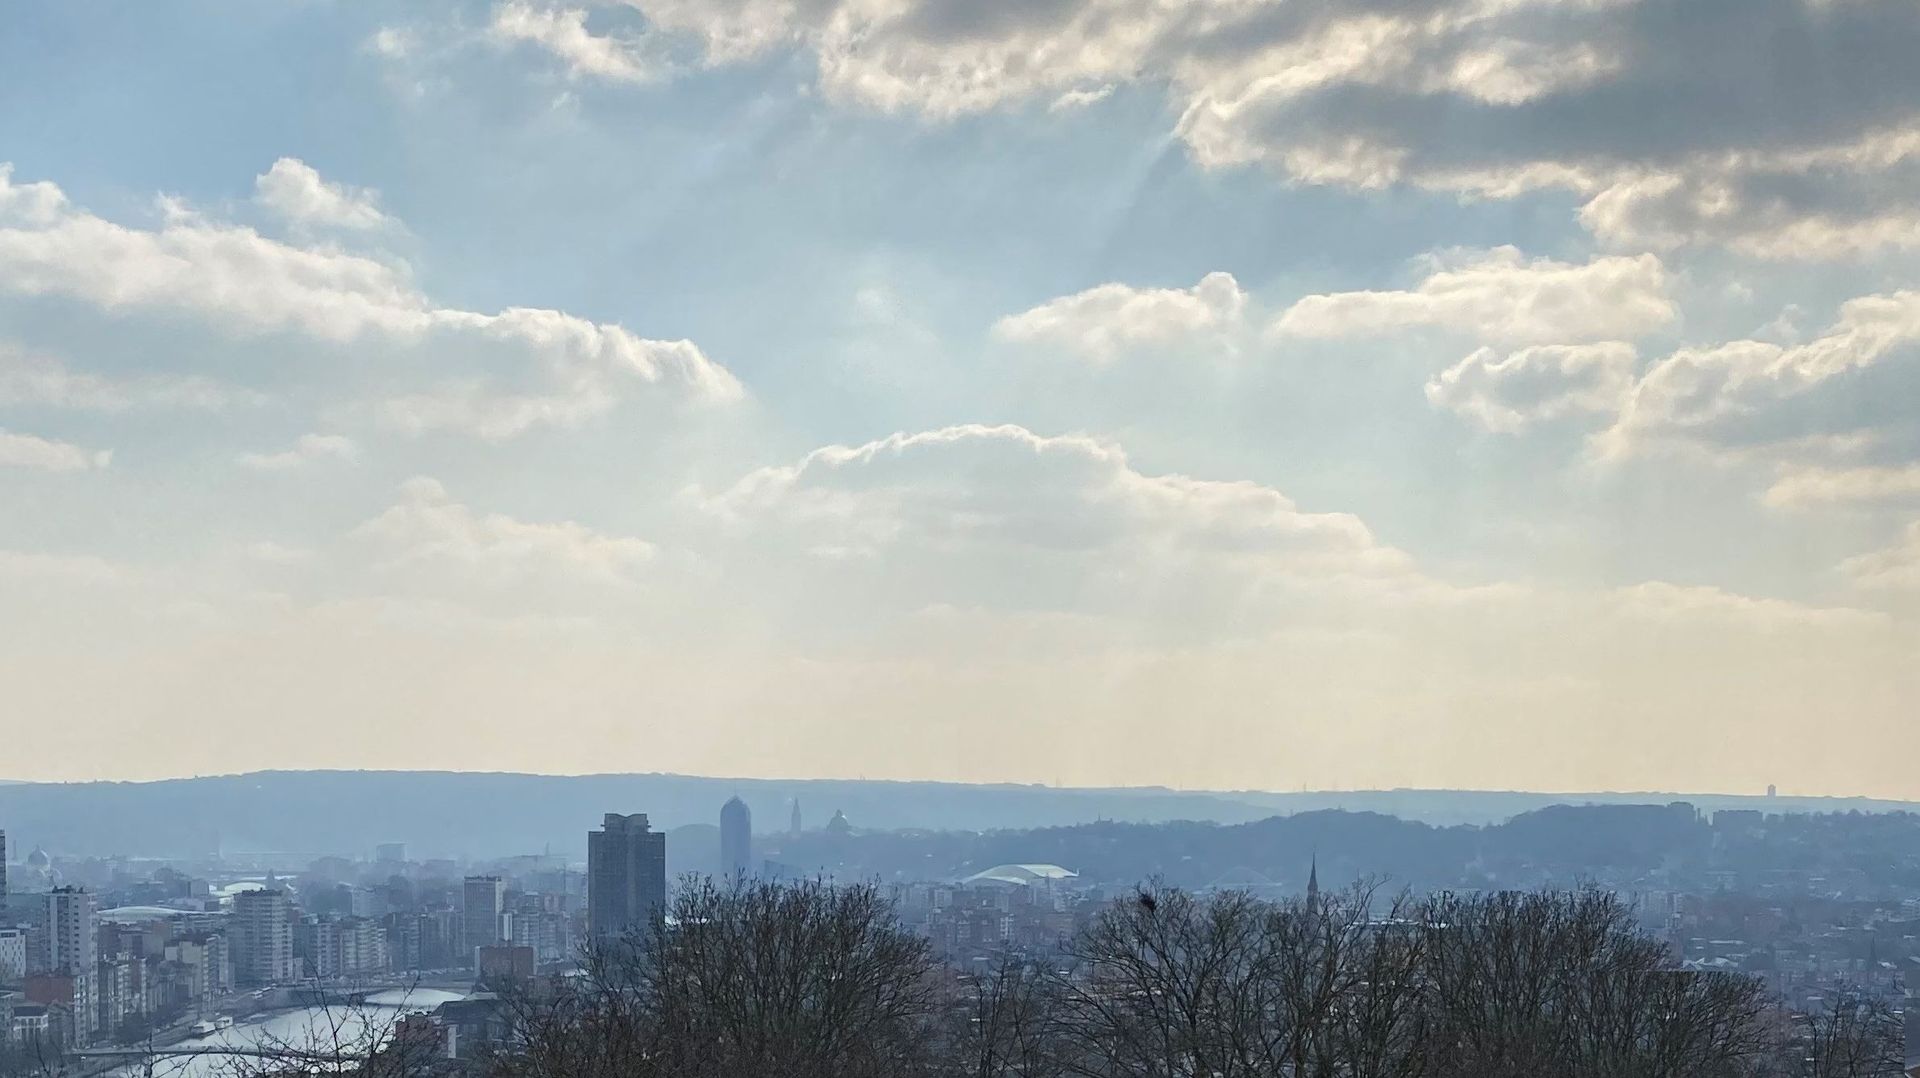 Pour les écologistes liégeois, les nuages d’austérités s’amoncellent dans le ciel de la ville